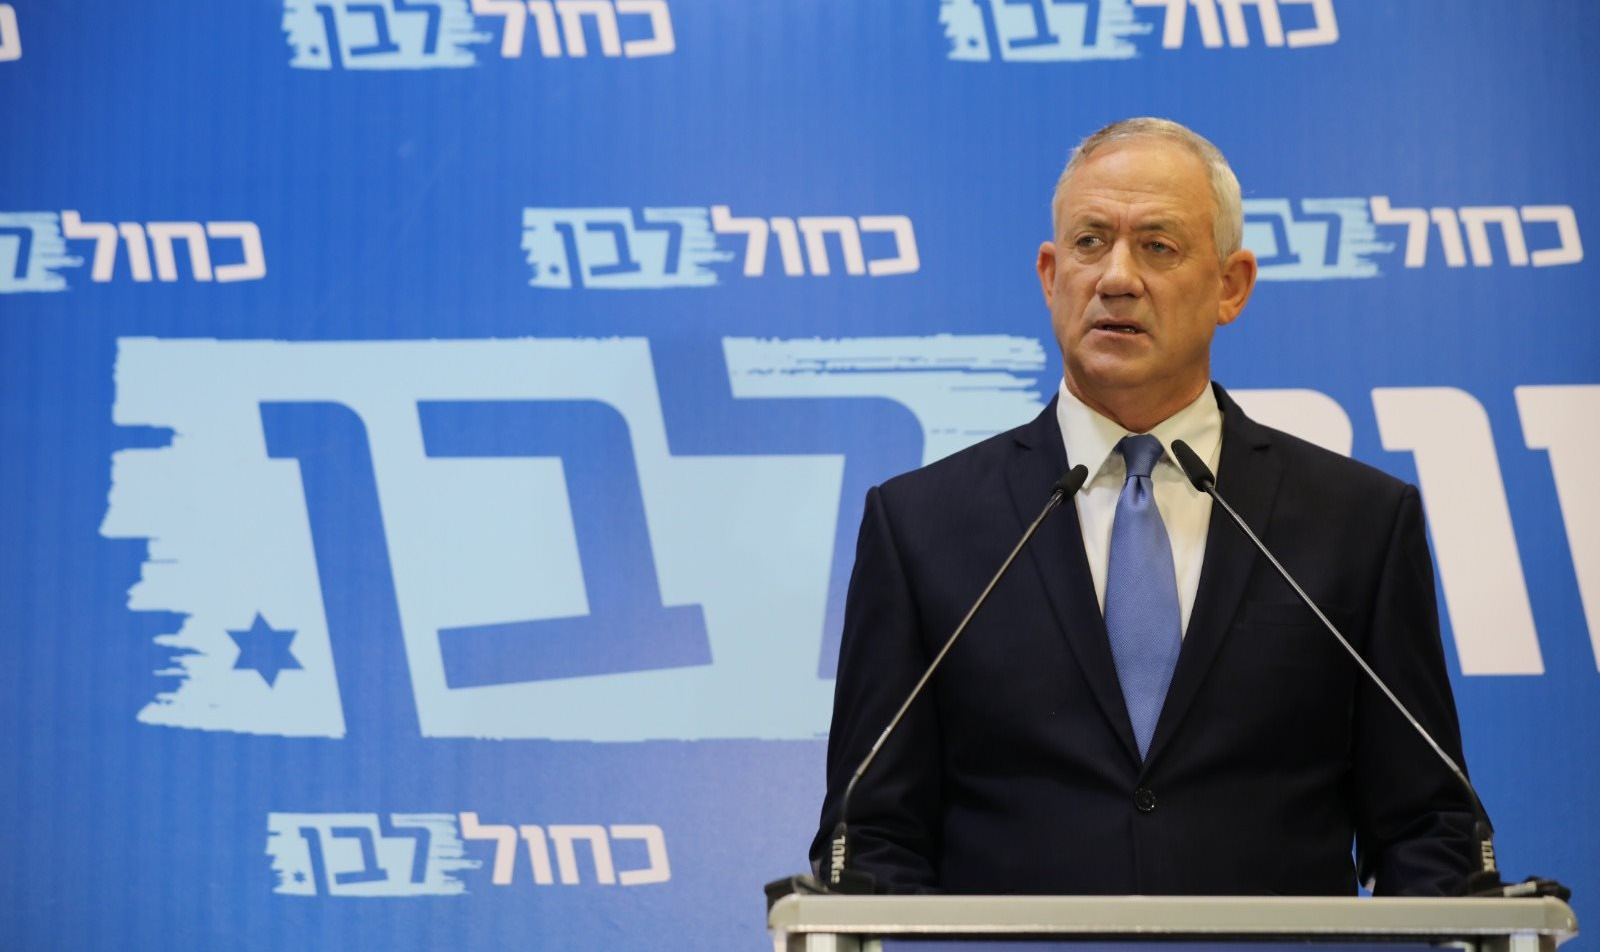 Premiê propôs coalizão liderada por Likud; 'Pretendo formar um amplo governo de coalizão liderado por mim', respondeu Gantz